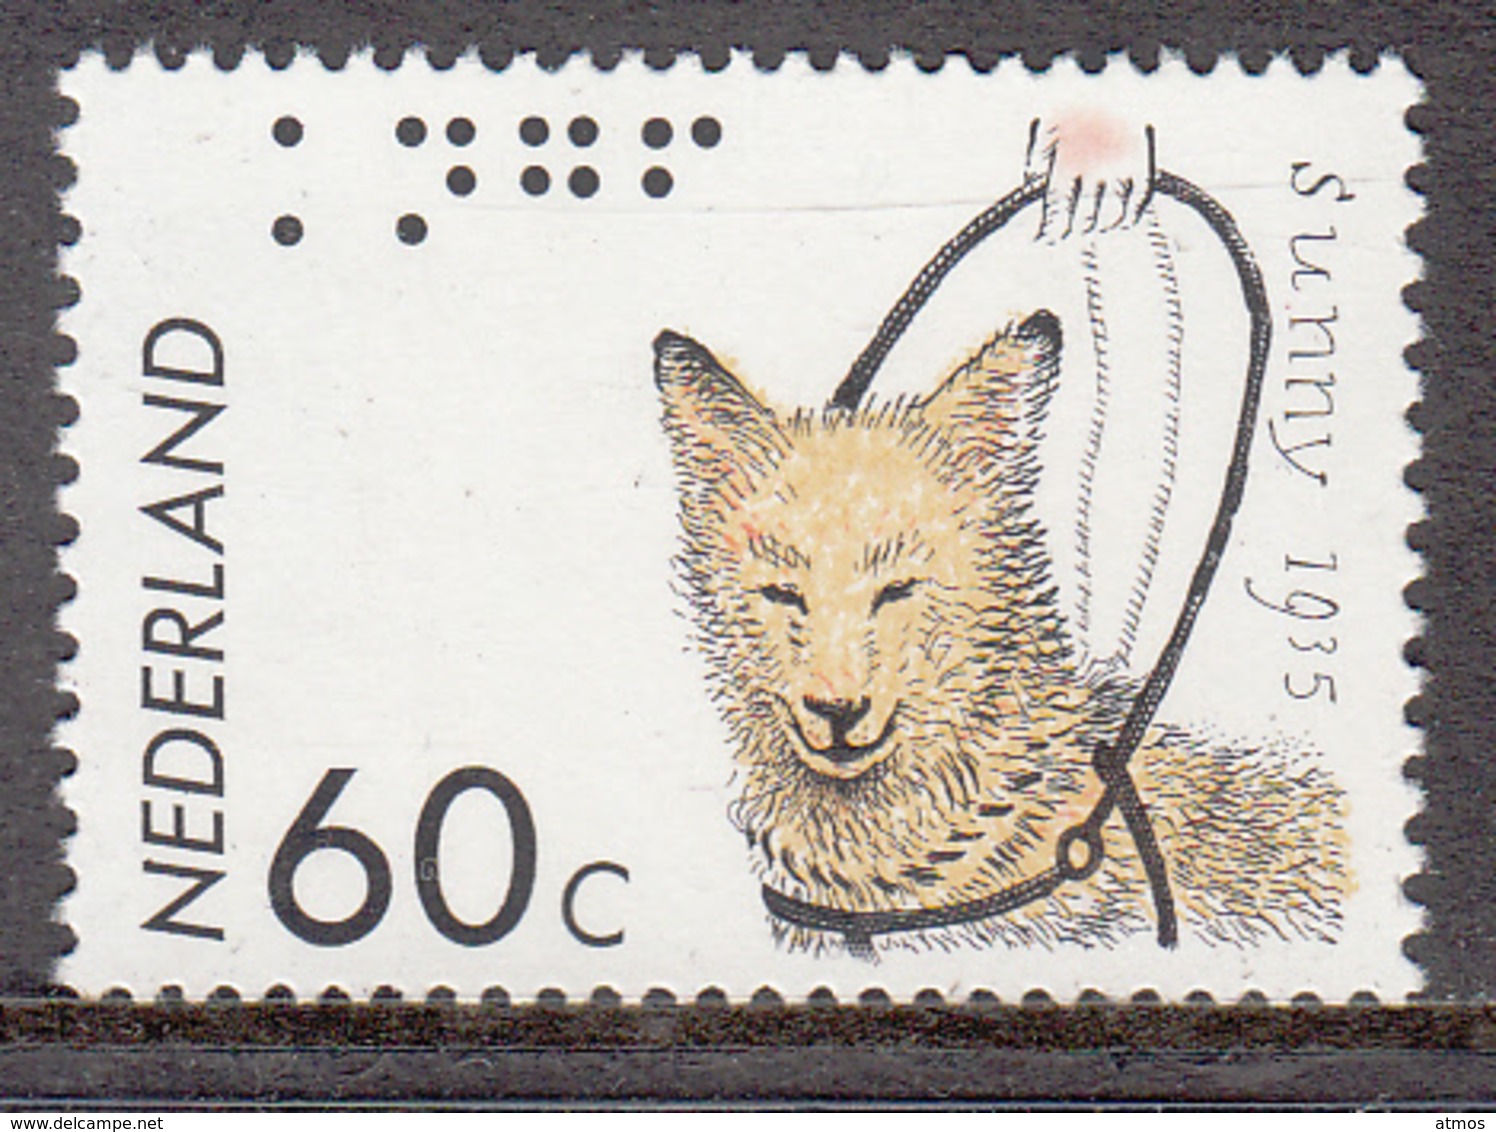 The Netherlands MNH NVPH Nr 1321 From 1985 / Catw 0.60 EUR - Ongebruikt